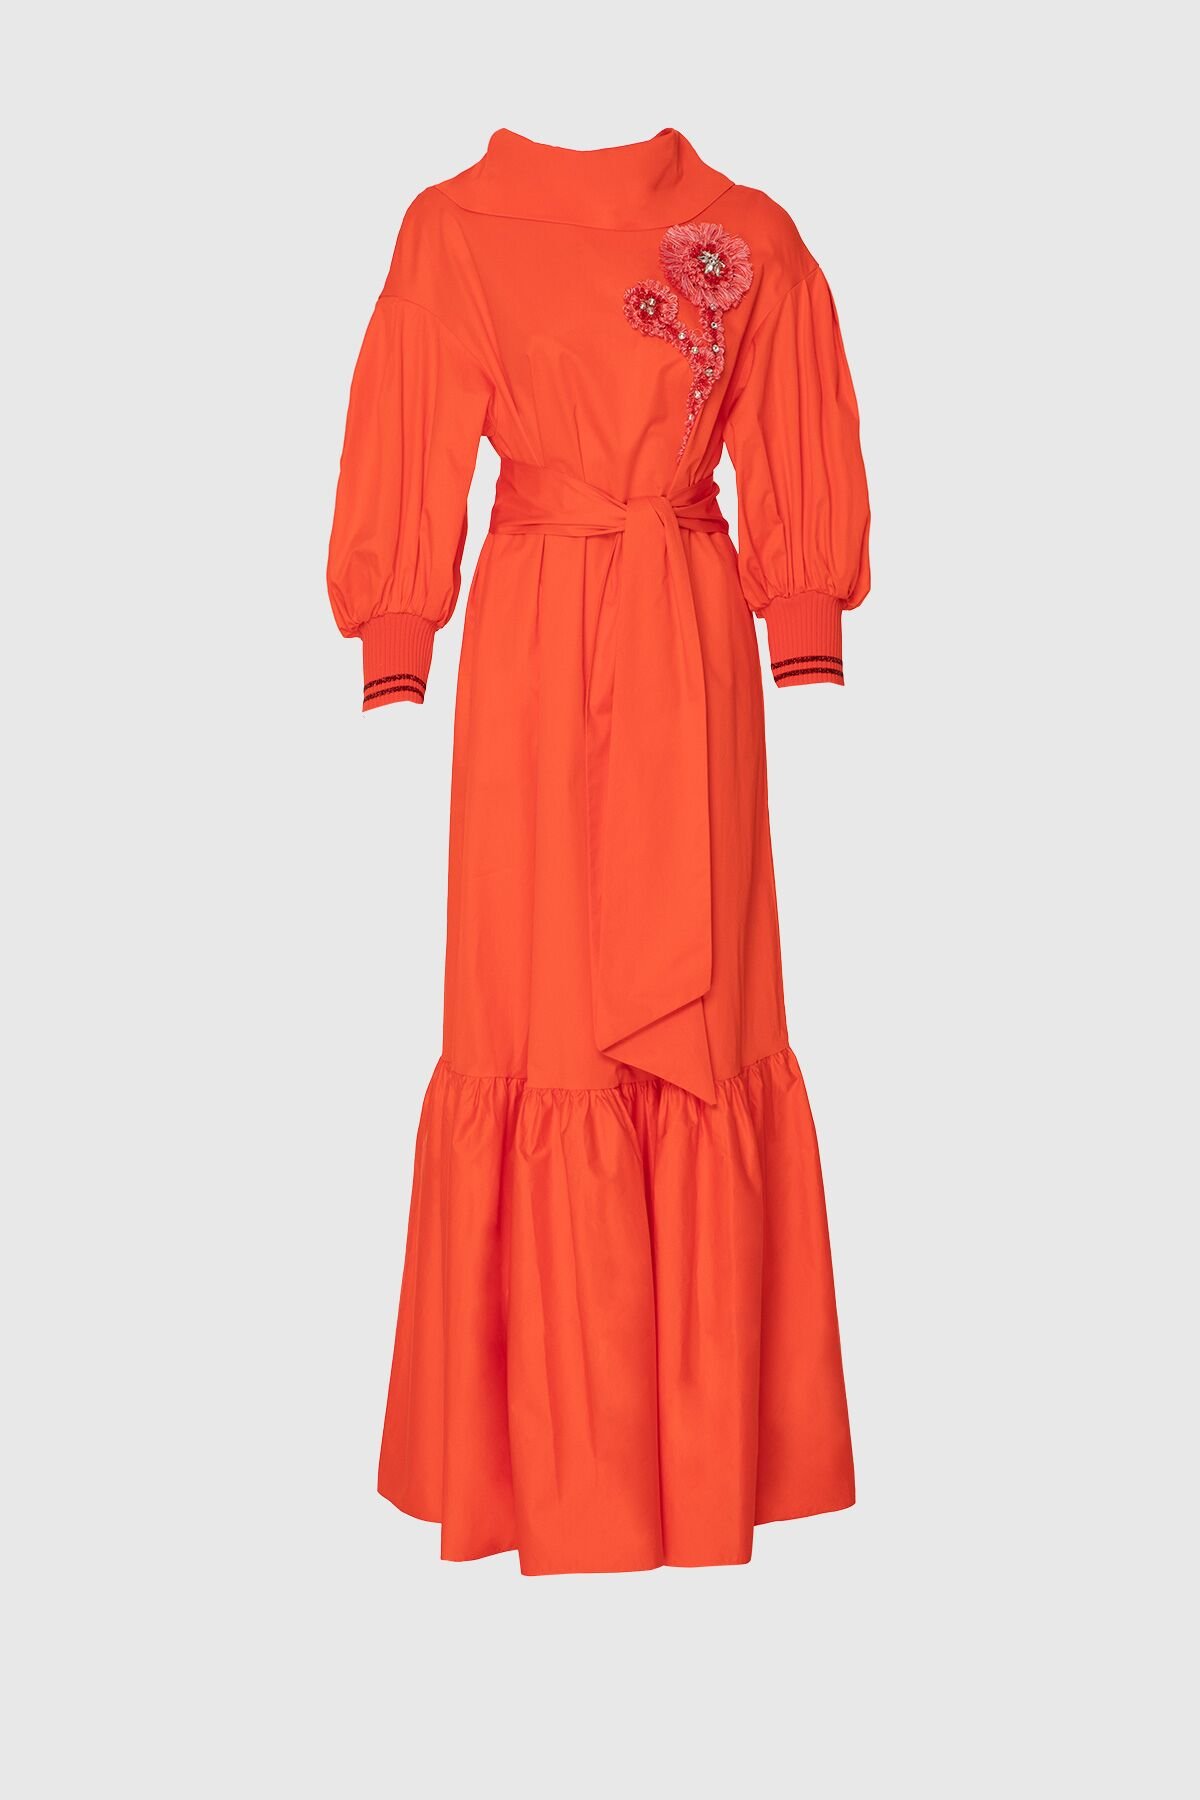 Aplike Nakış İşlemeli Uzun Kırmızı Poplin Elbise